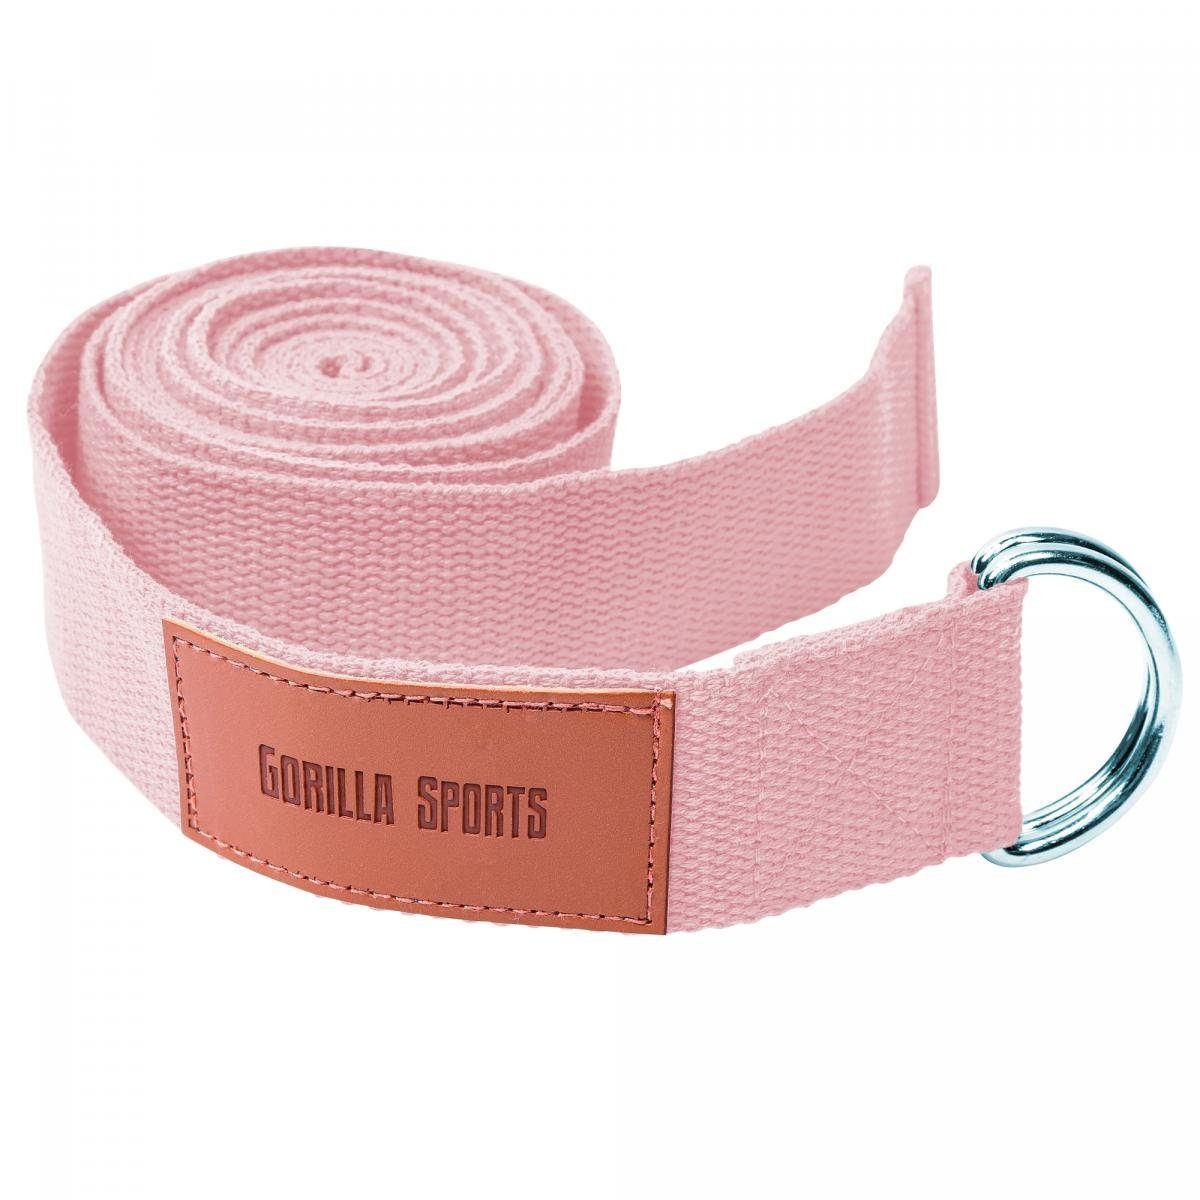 GORILLA SPORTS Yogagurt Yoga-Gürtel, Yoga Rosa Baumwolle, 100% Metall, mit Verschluss aus Strap